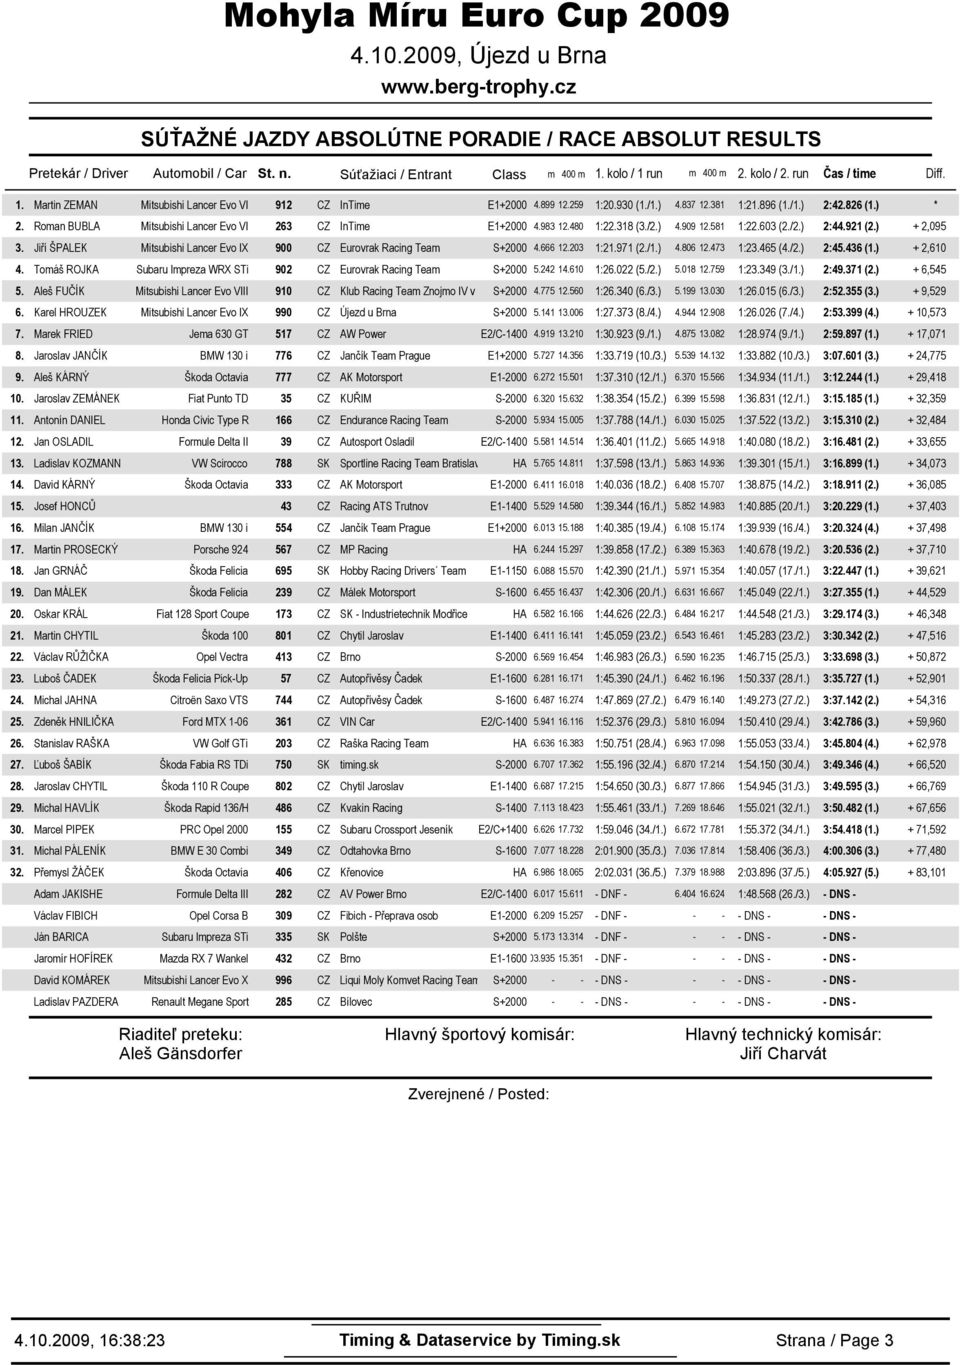 ) + 2,095 3. Jiří ŠPALEK Mitsubishi Lancer Evo IX 900 CZ Eurovrak Racing Team S+2000 4.666 12.203 1:21.971 (2./1.) 4.806 12.473 1:23.465 (4./2.) 2:45.436 (1.) + 2,610 4.